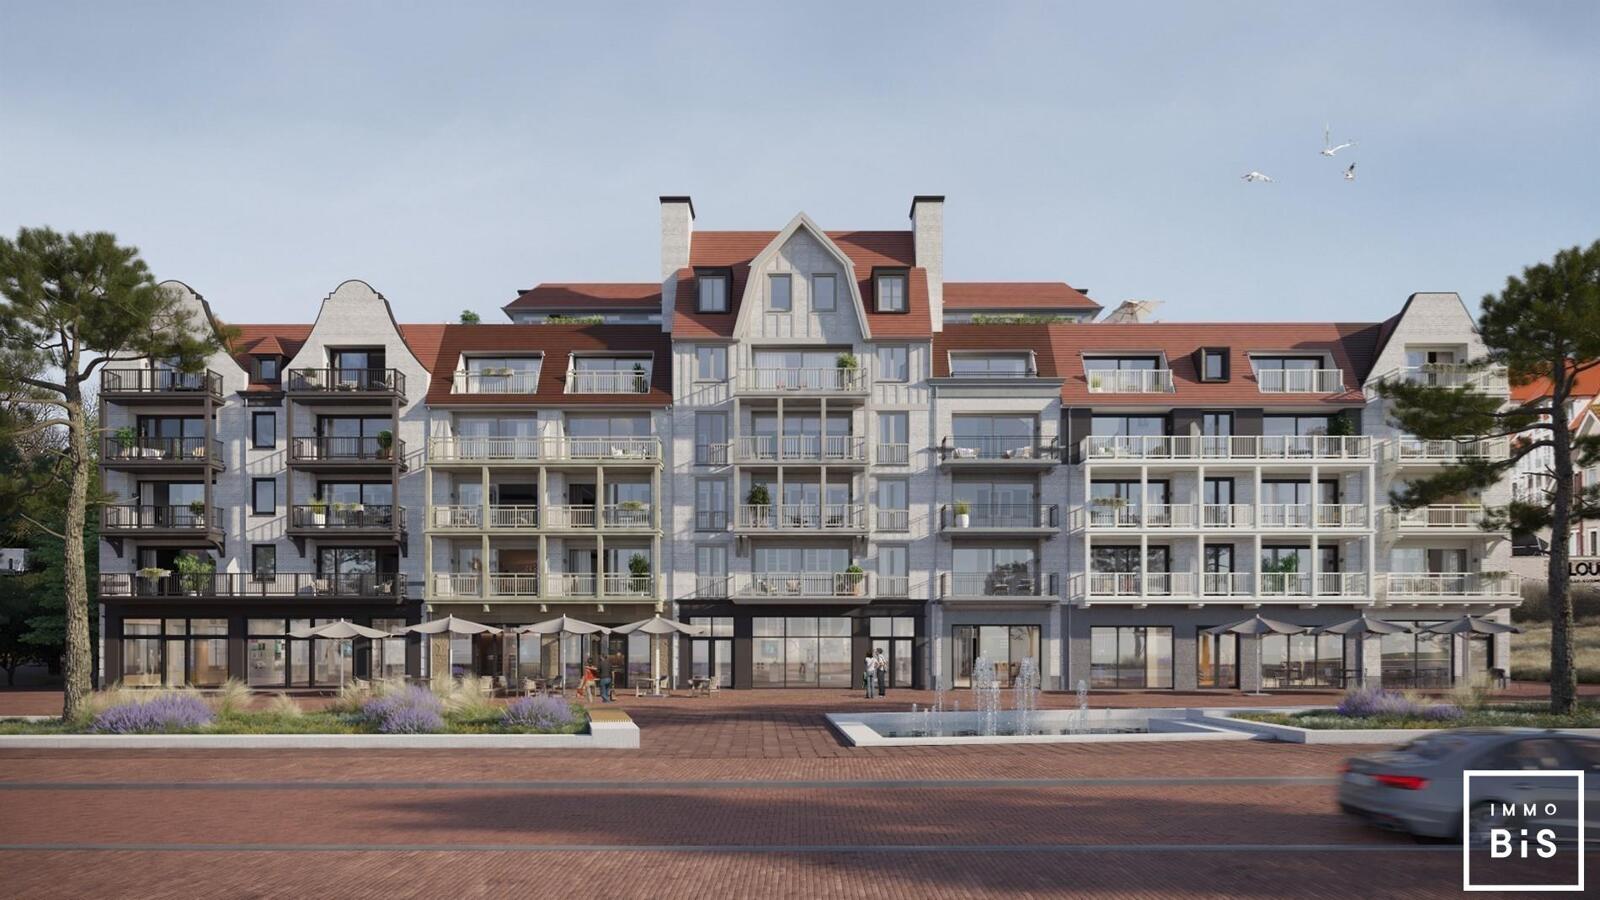 " Appartement villa moderne avec terrasse sur la Digue à Cadzand - Résidence Duinhof-Noord " 7